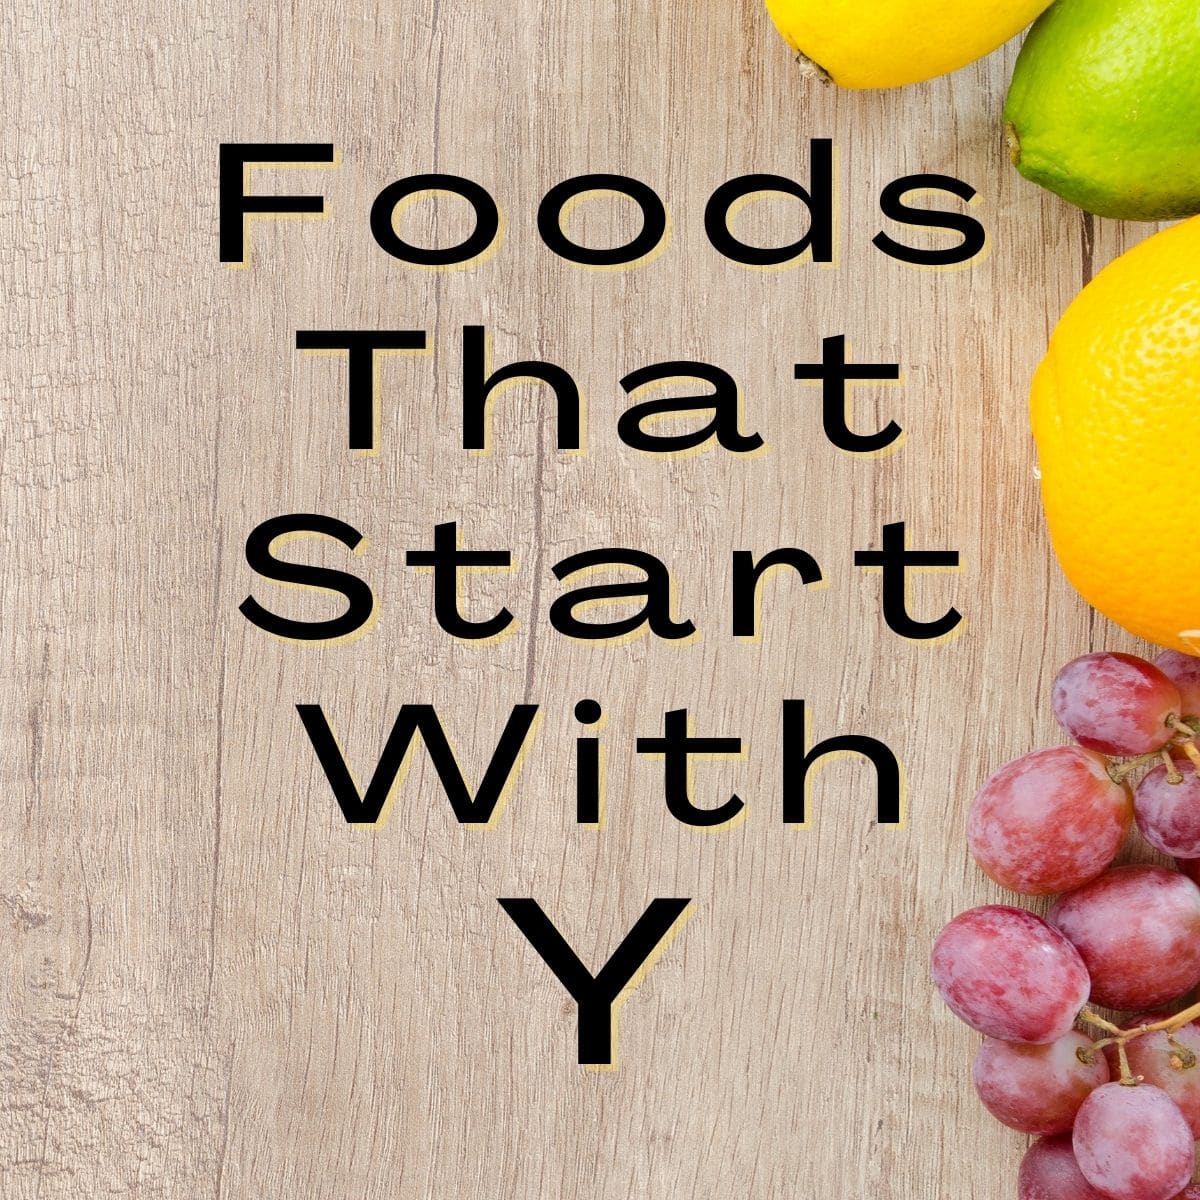 खाद्य पदार्थ जो y से शुरू होते हैं।